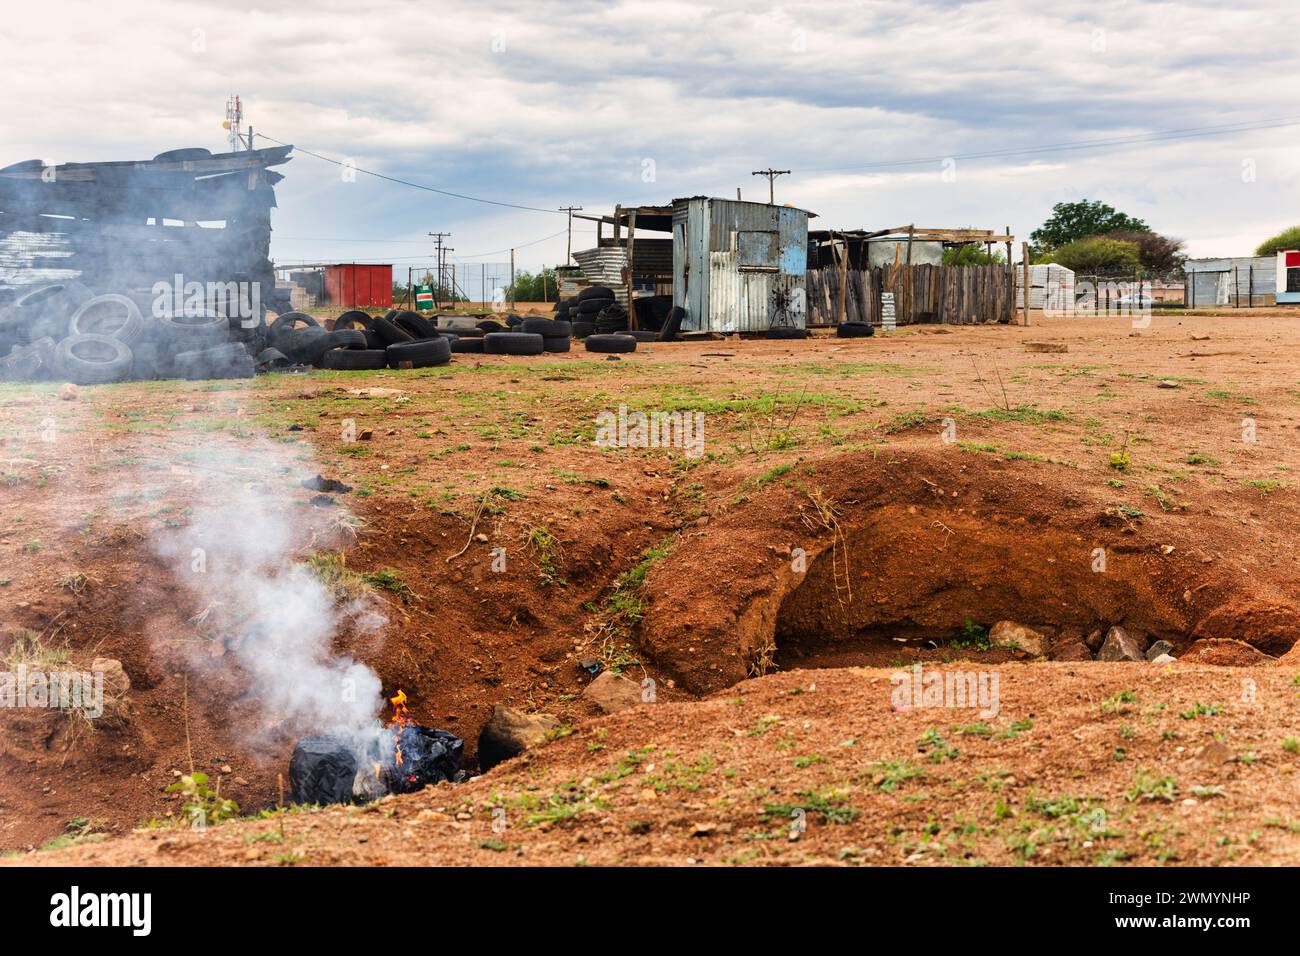 township informelle Siedlung in afrika in der Nähe eines Hügels, Hütte aus Wellblech und Holz, Müllsäcke brennen im Vordergrund Stockfoto